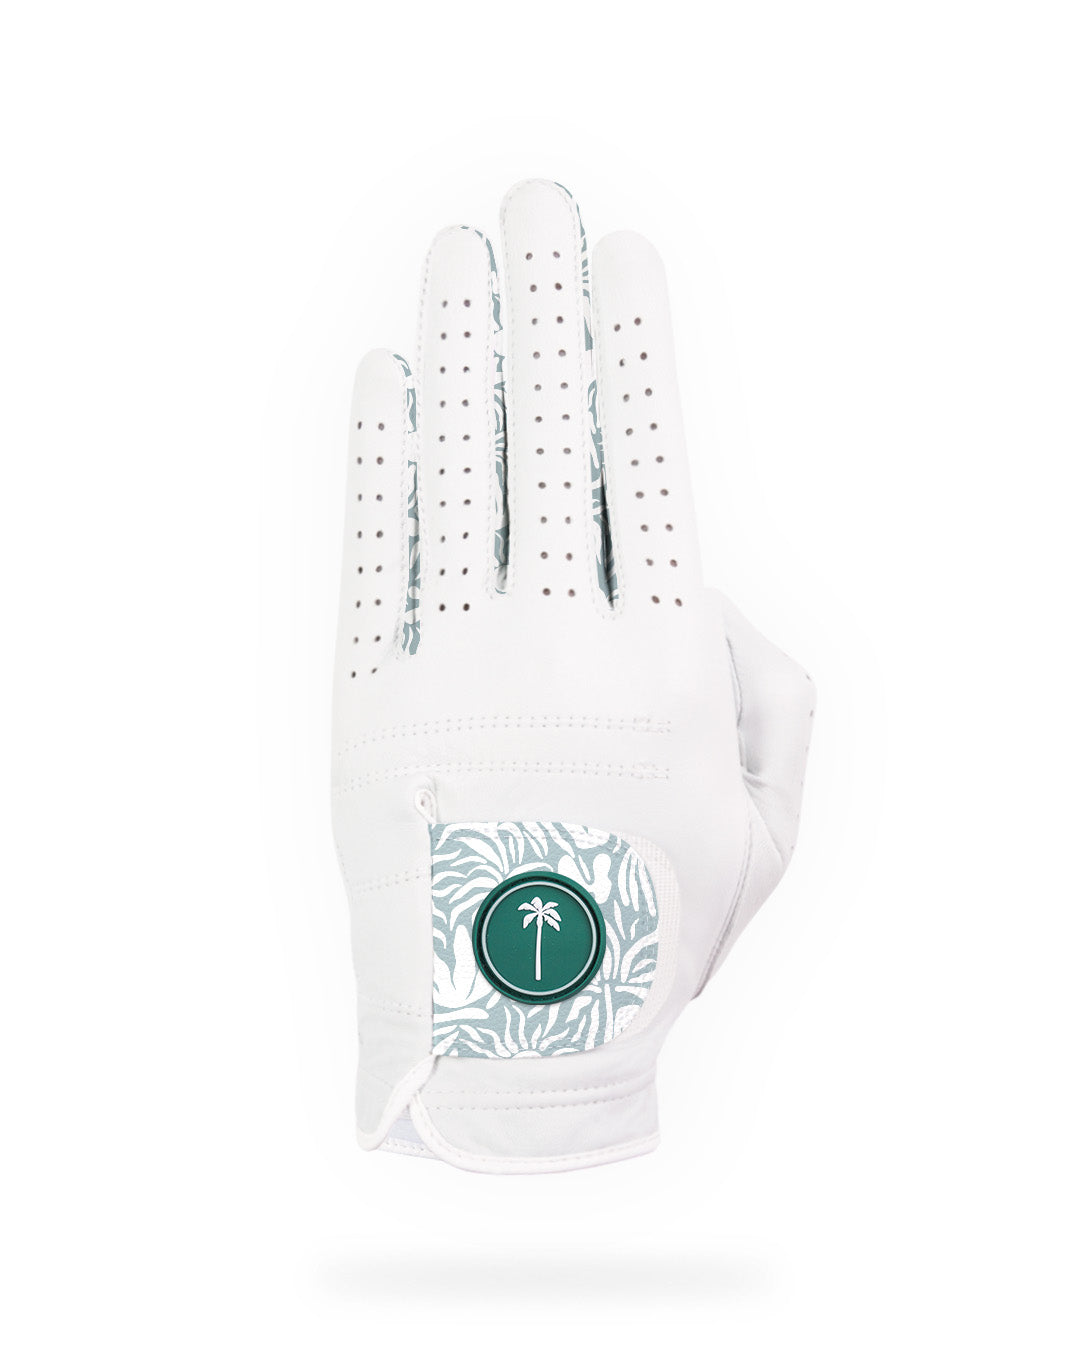 Men's Wanderer Glove - Palm Golf Co.